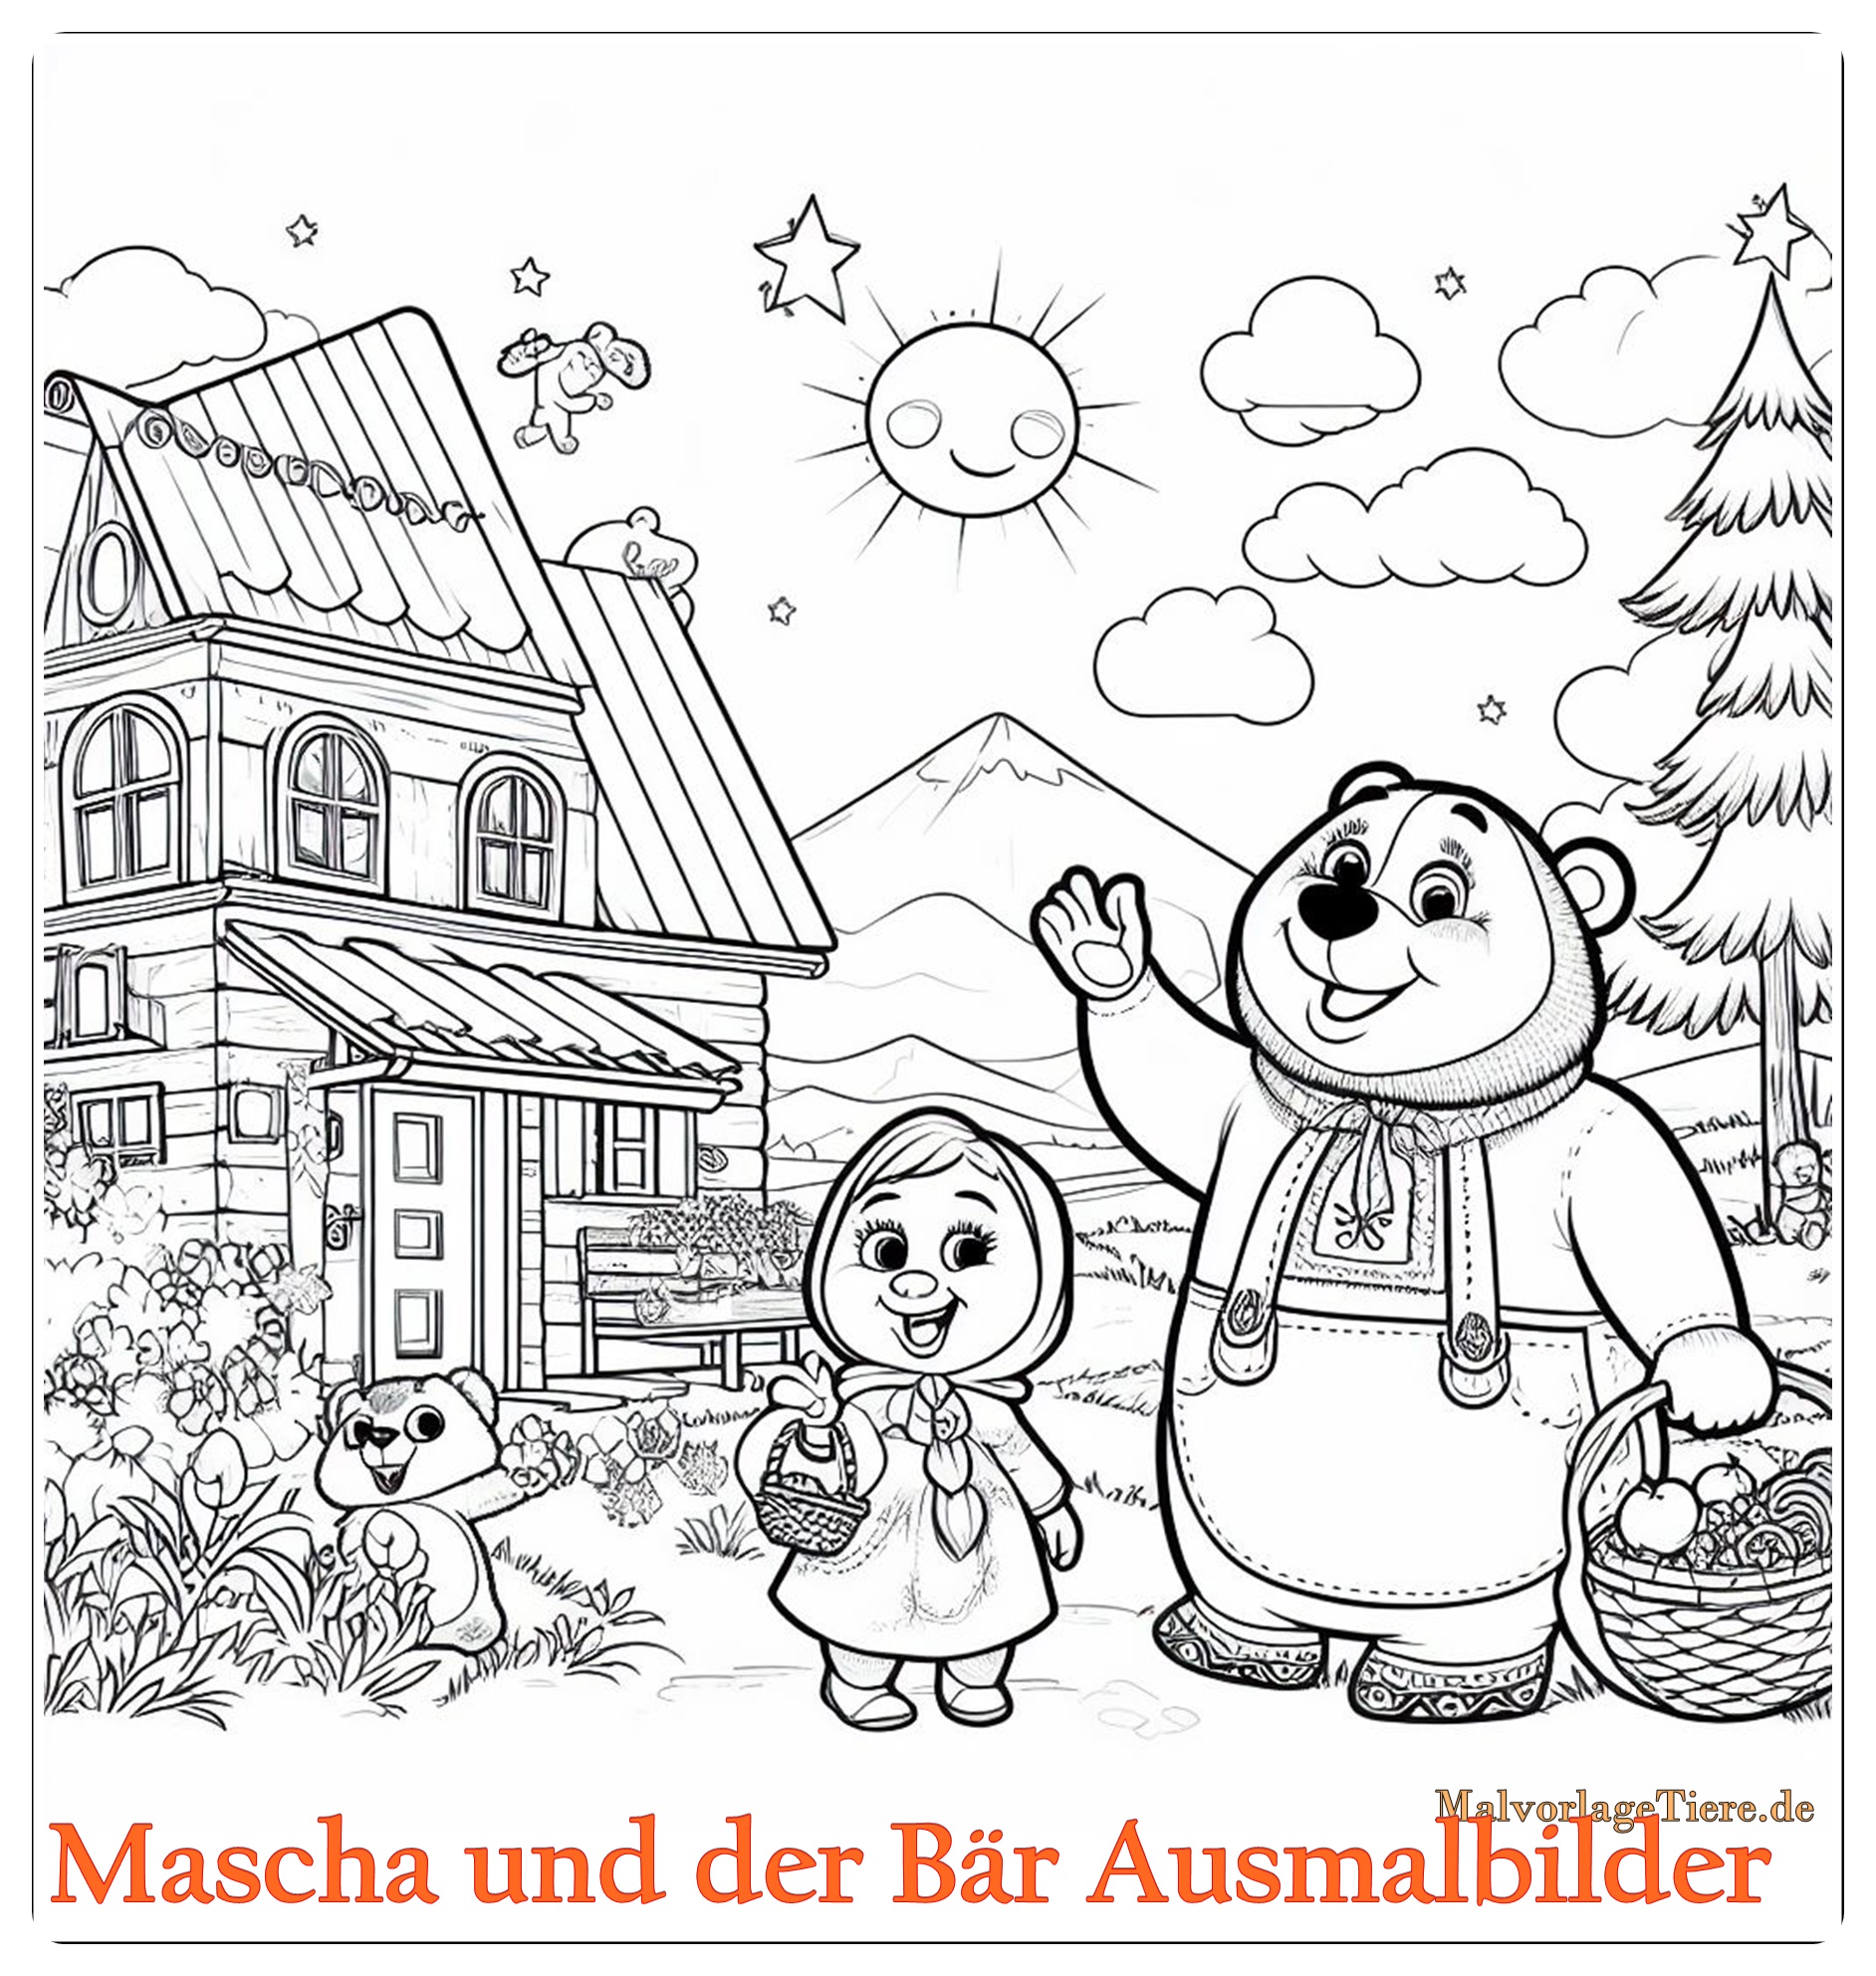 Mascha und der Bär Ausmalbilder 01 by malvorlagetiere.de